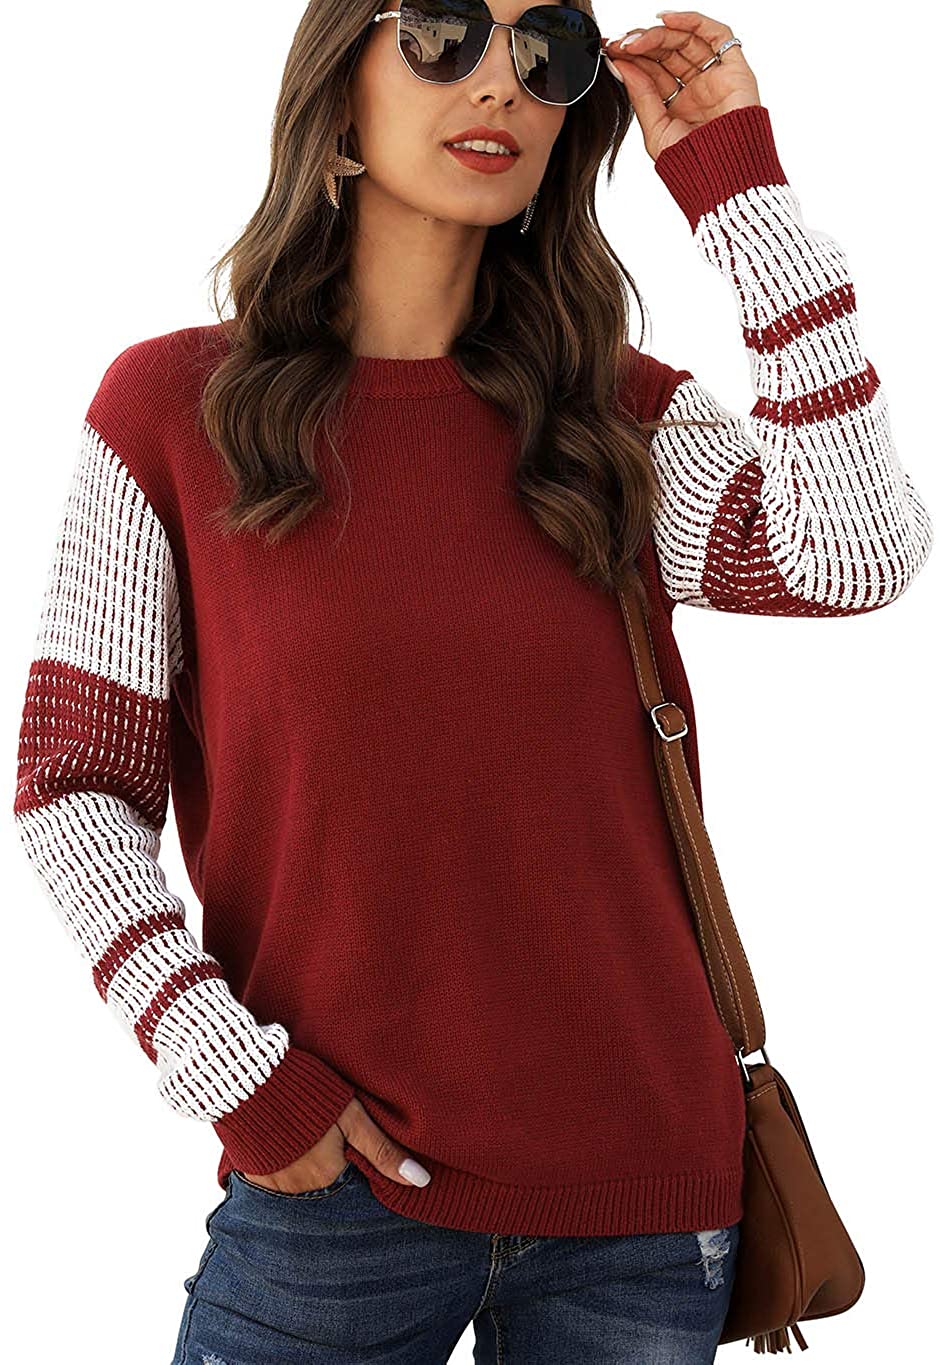 koitmy Women's Cute Contrast Sleeve Knitted Pullover Sweater | eBay